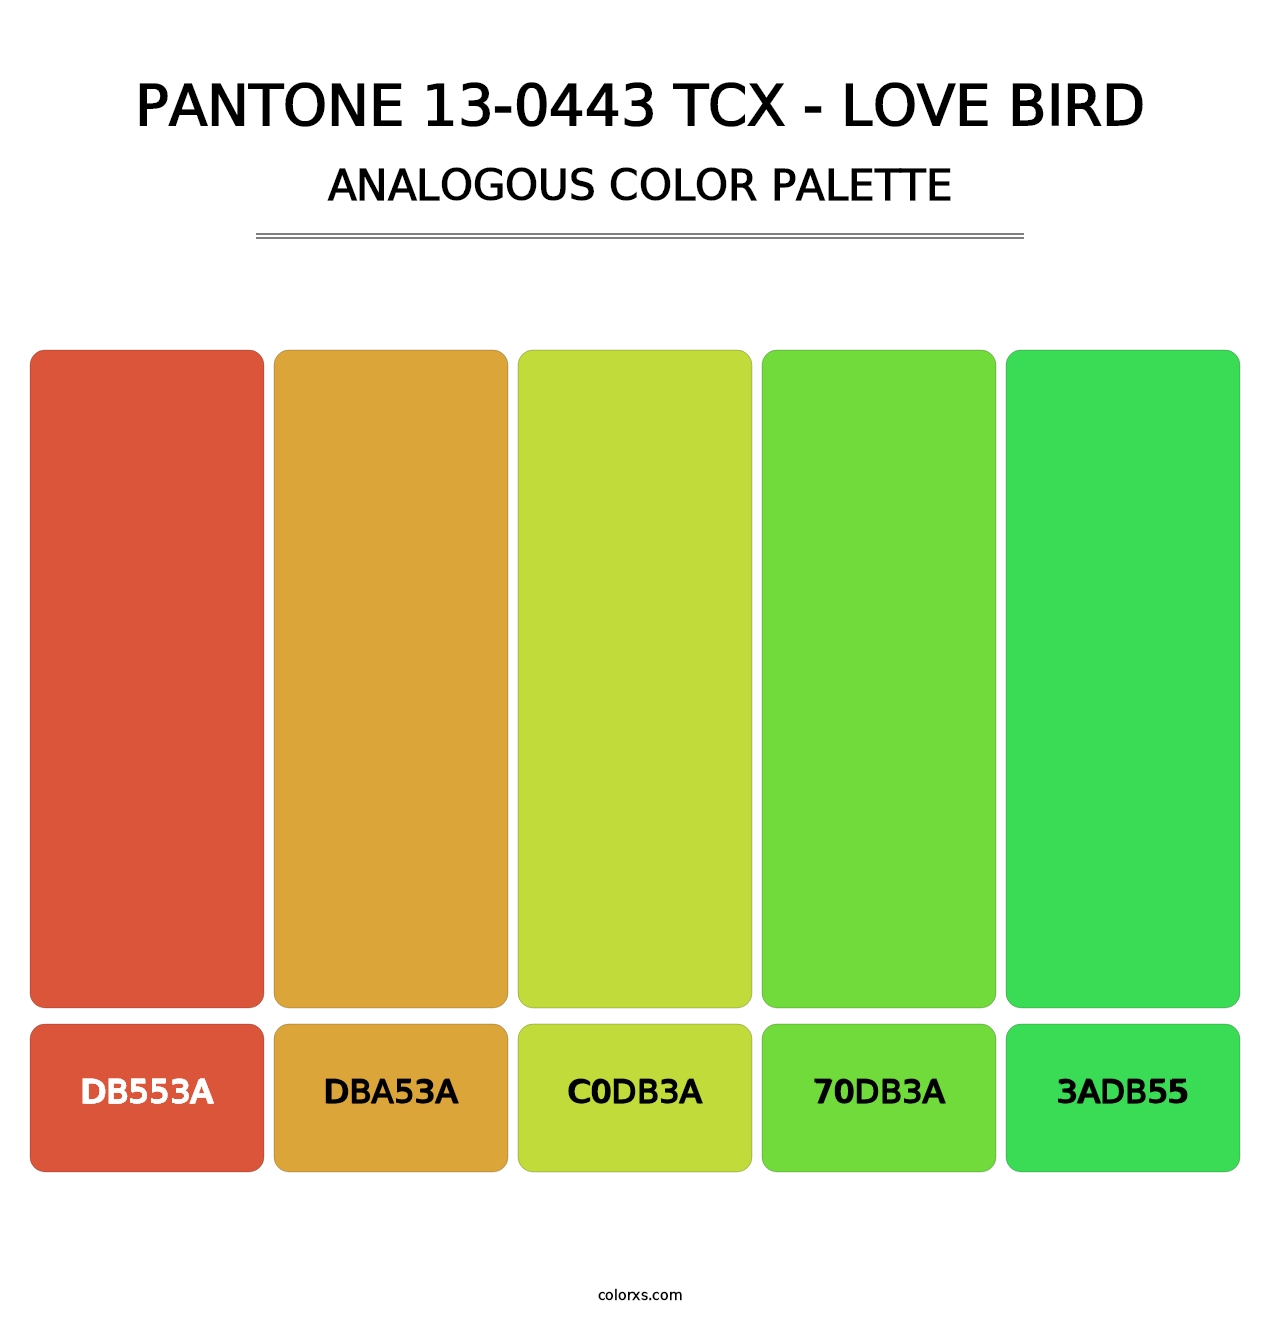 PANTONE 13-0443 TCX - Love Bird - Analogous Color Palette